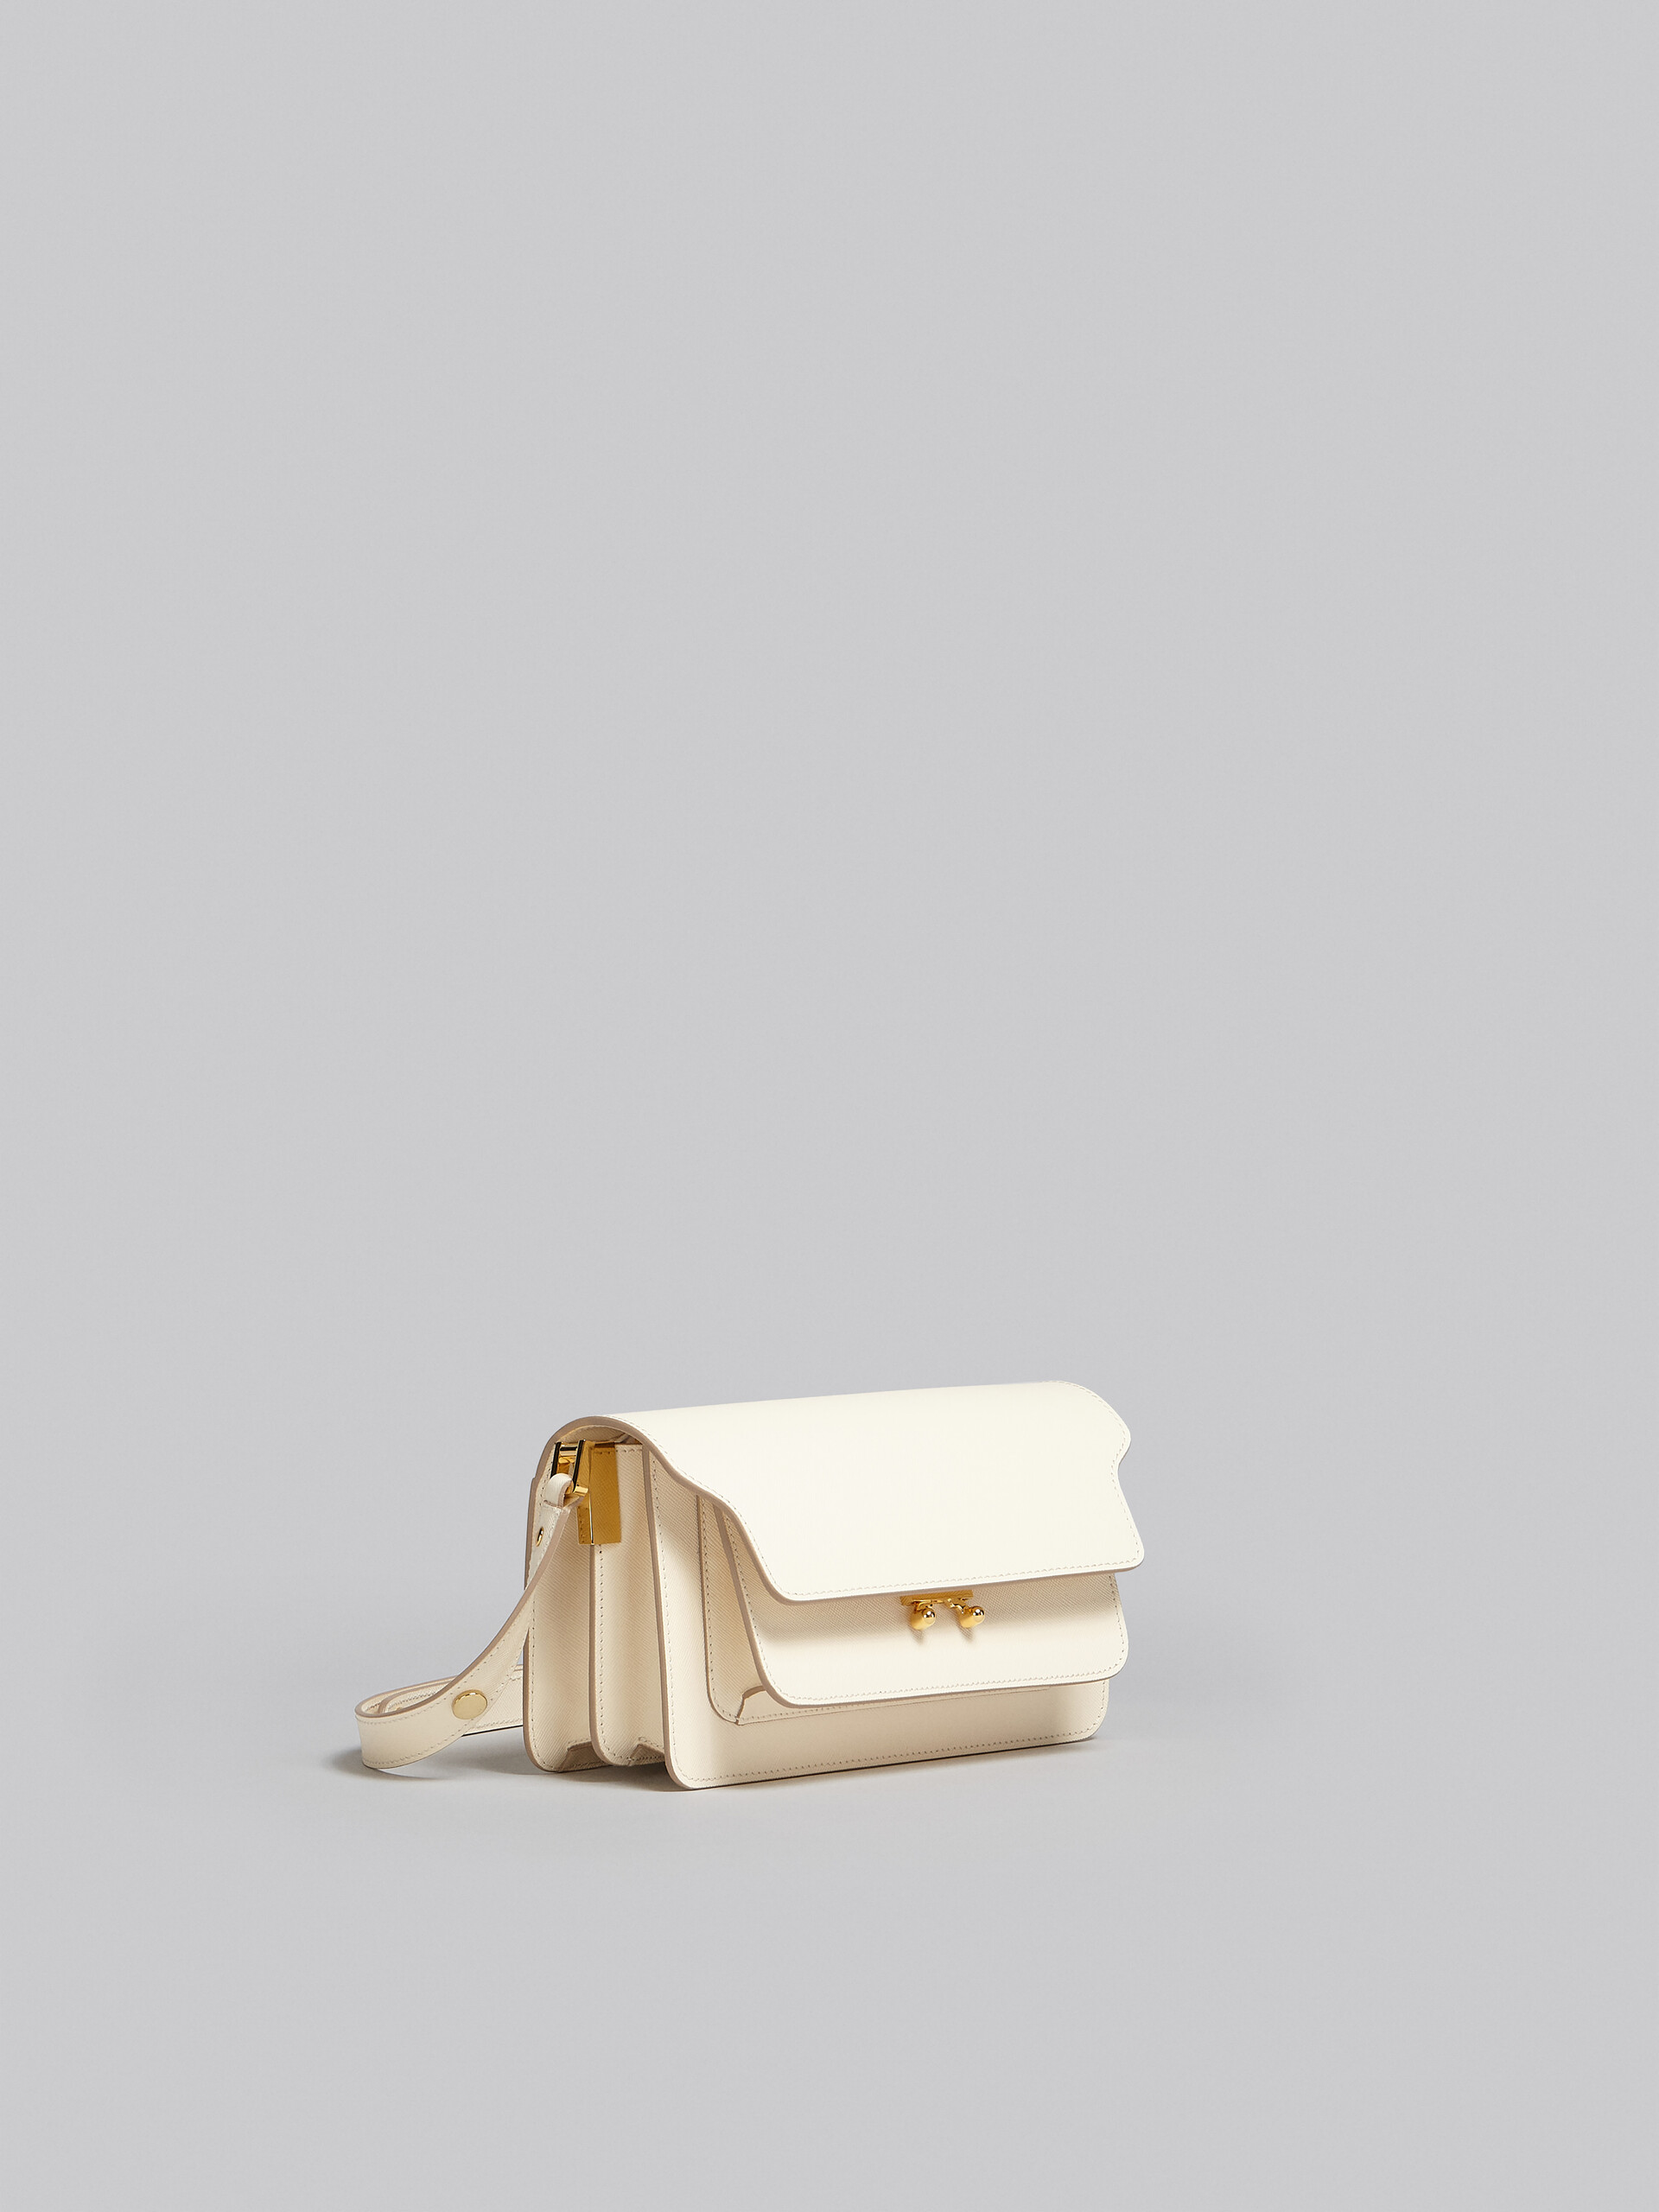 Sac Trunk horizontal en cuir Saffiano blanc - Sacs portés épaule - Image 6